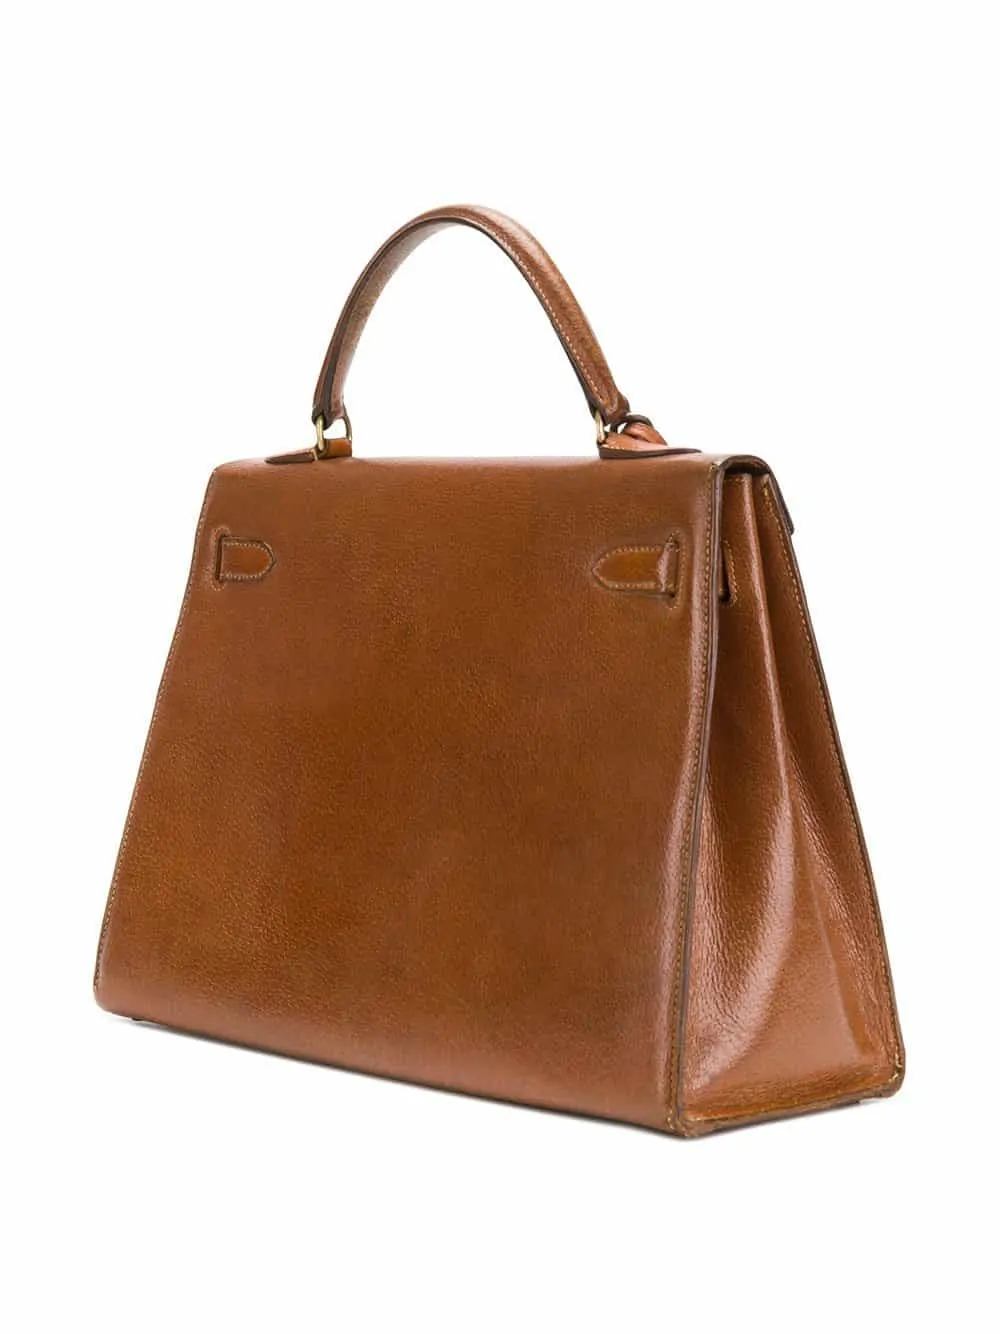 Vintage HERMES Paris Kelly Sellier 32 Brown Leather Women's Bag